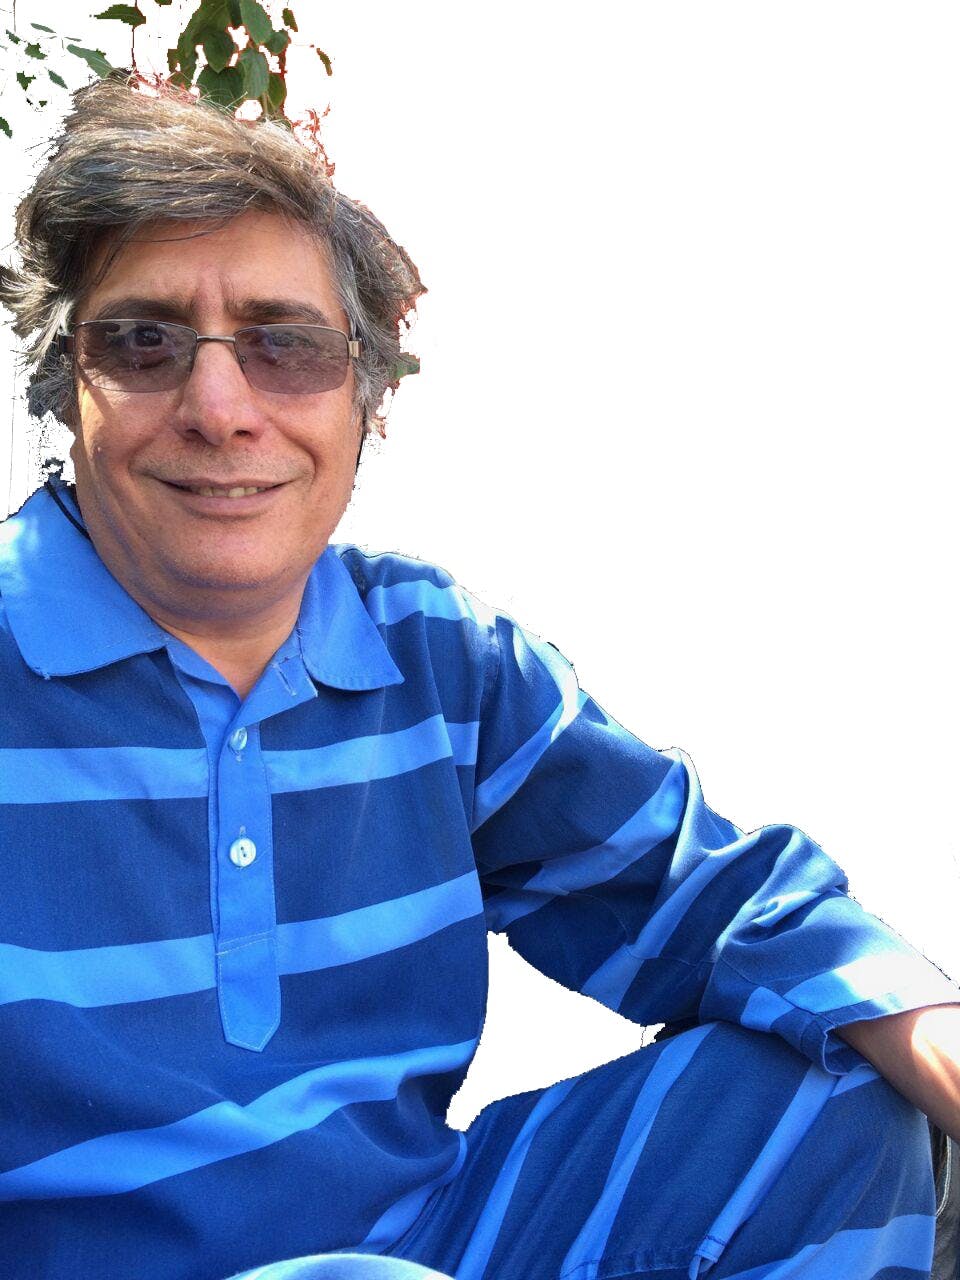 مصطفی عزیزی، فیلم‌ساز و برنامه‌ساز تلویزیونی که پس از «جنبش سبز» به کانادا مهاجرت کرد، در بازگشت به ایران پس از پنج سال از سوی ماموران اطلاعات سپاه پاسداران دستگیر شد و مدتی را در انفرادی گذراند.